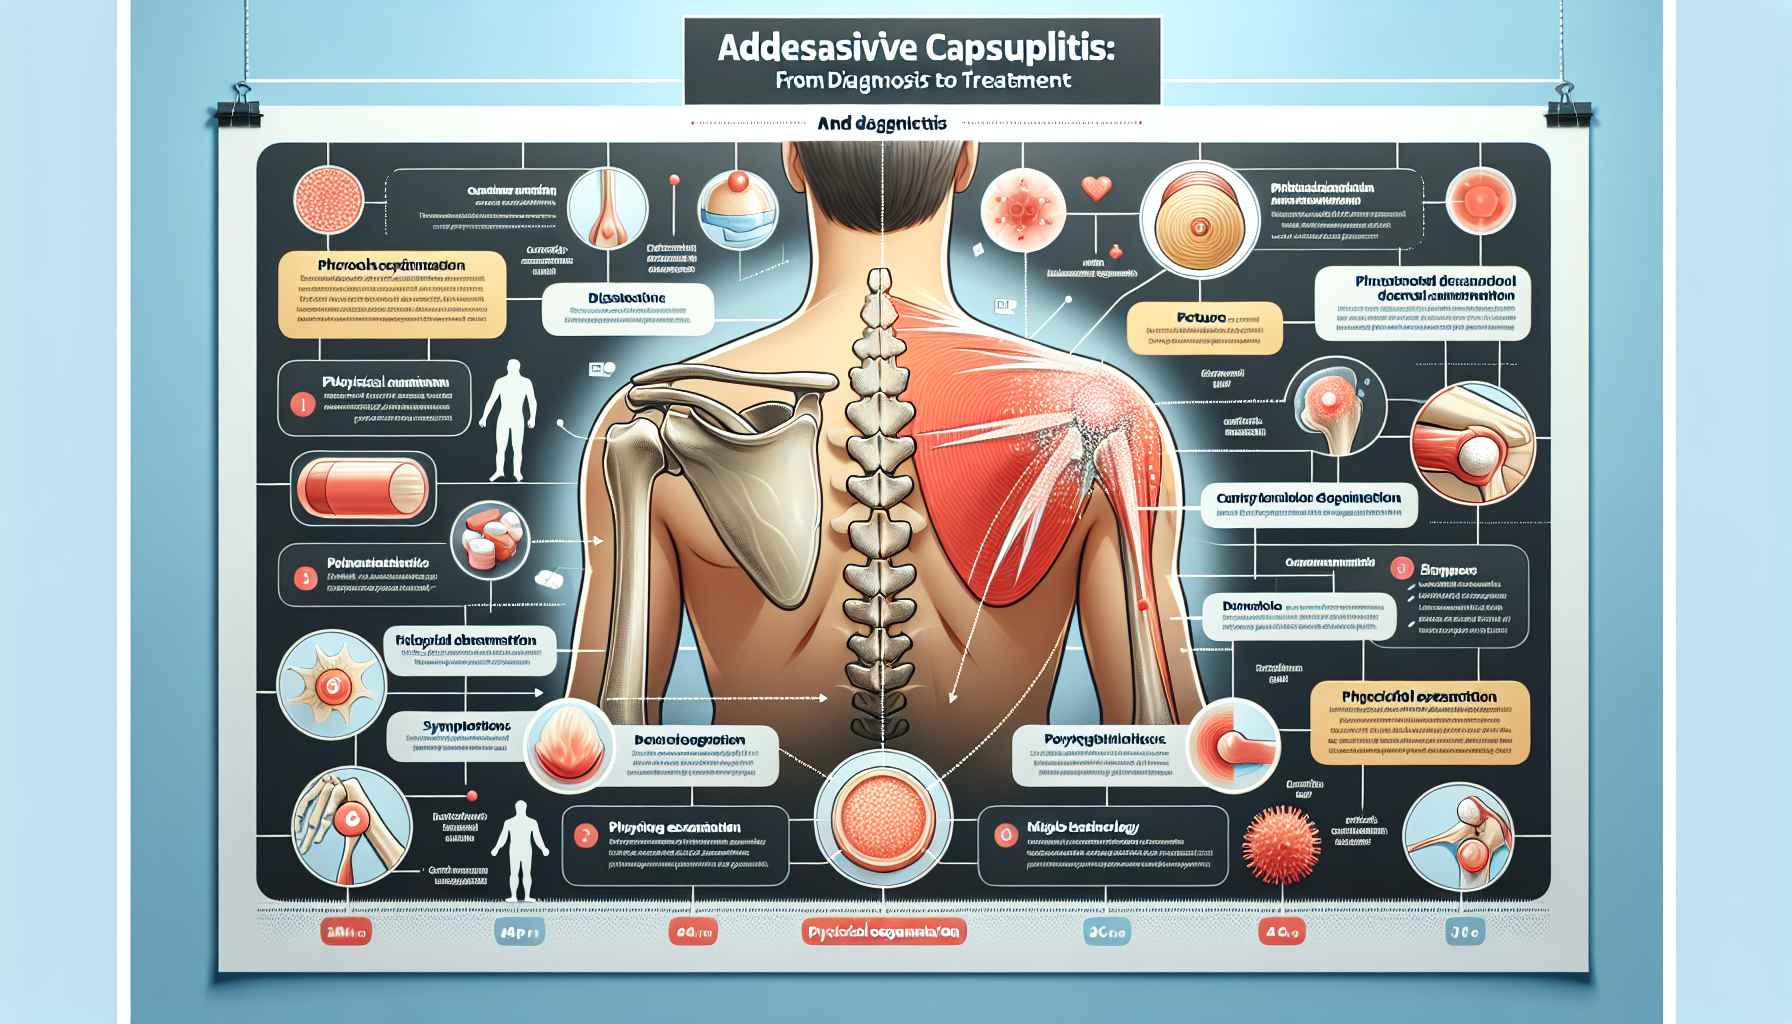 Tudo Sobre Capsulite Adesiva: Do Diagnóstico ao Tratamento